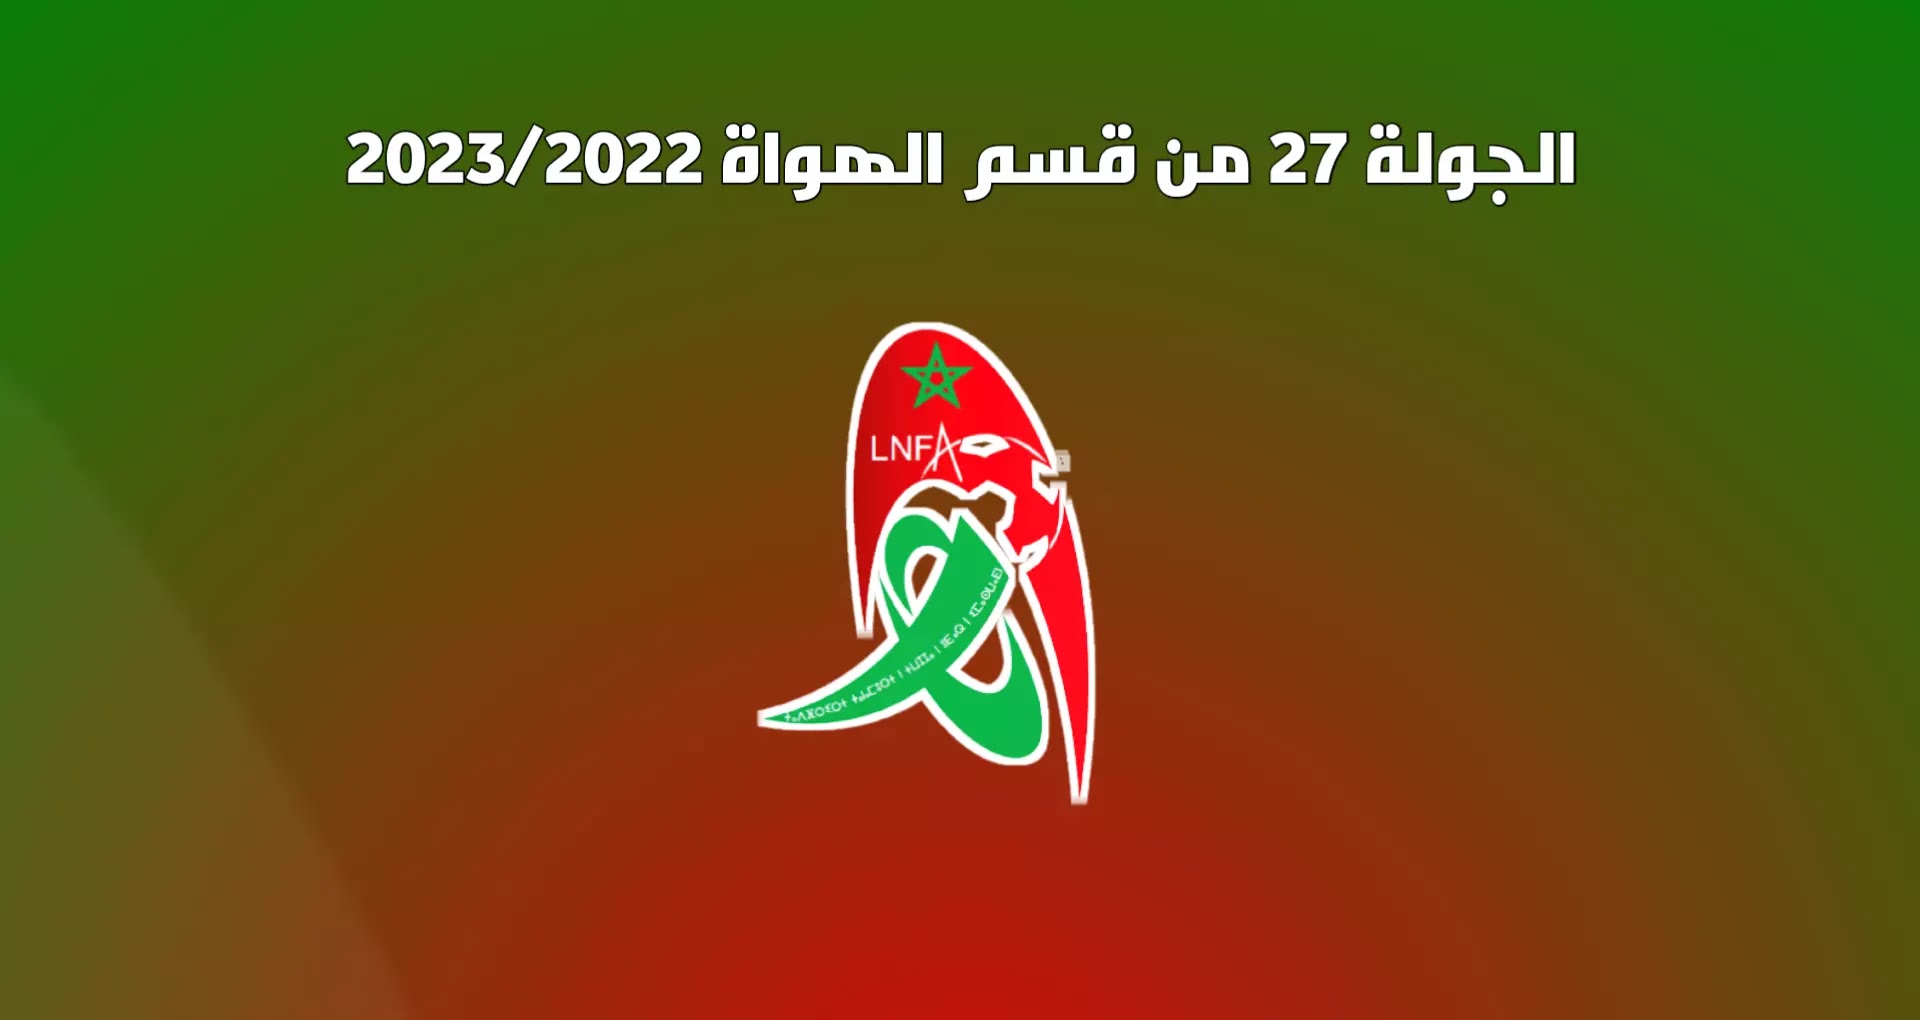 برنامج الجولة 27 من القسم الوطني هواة 2023/2022